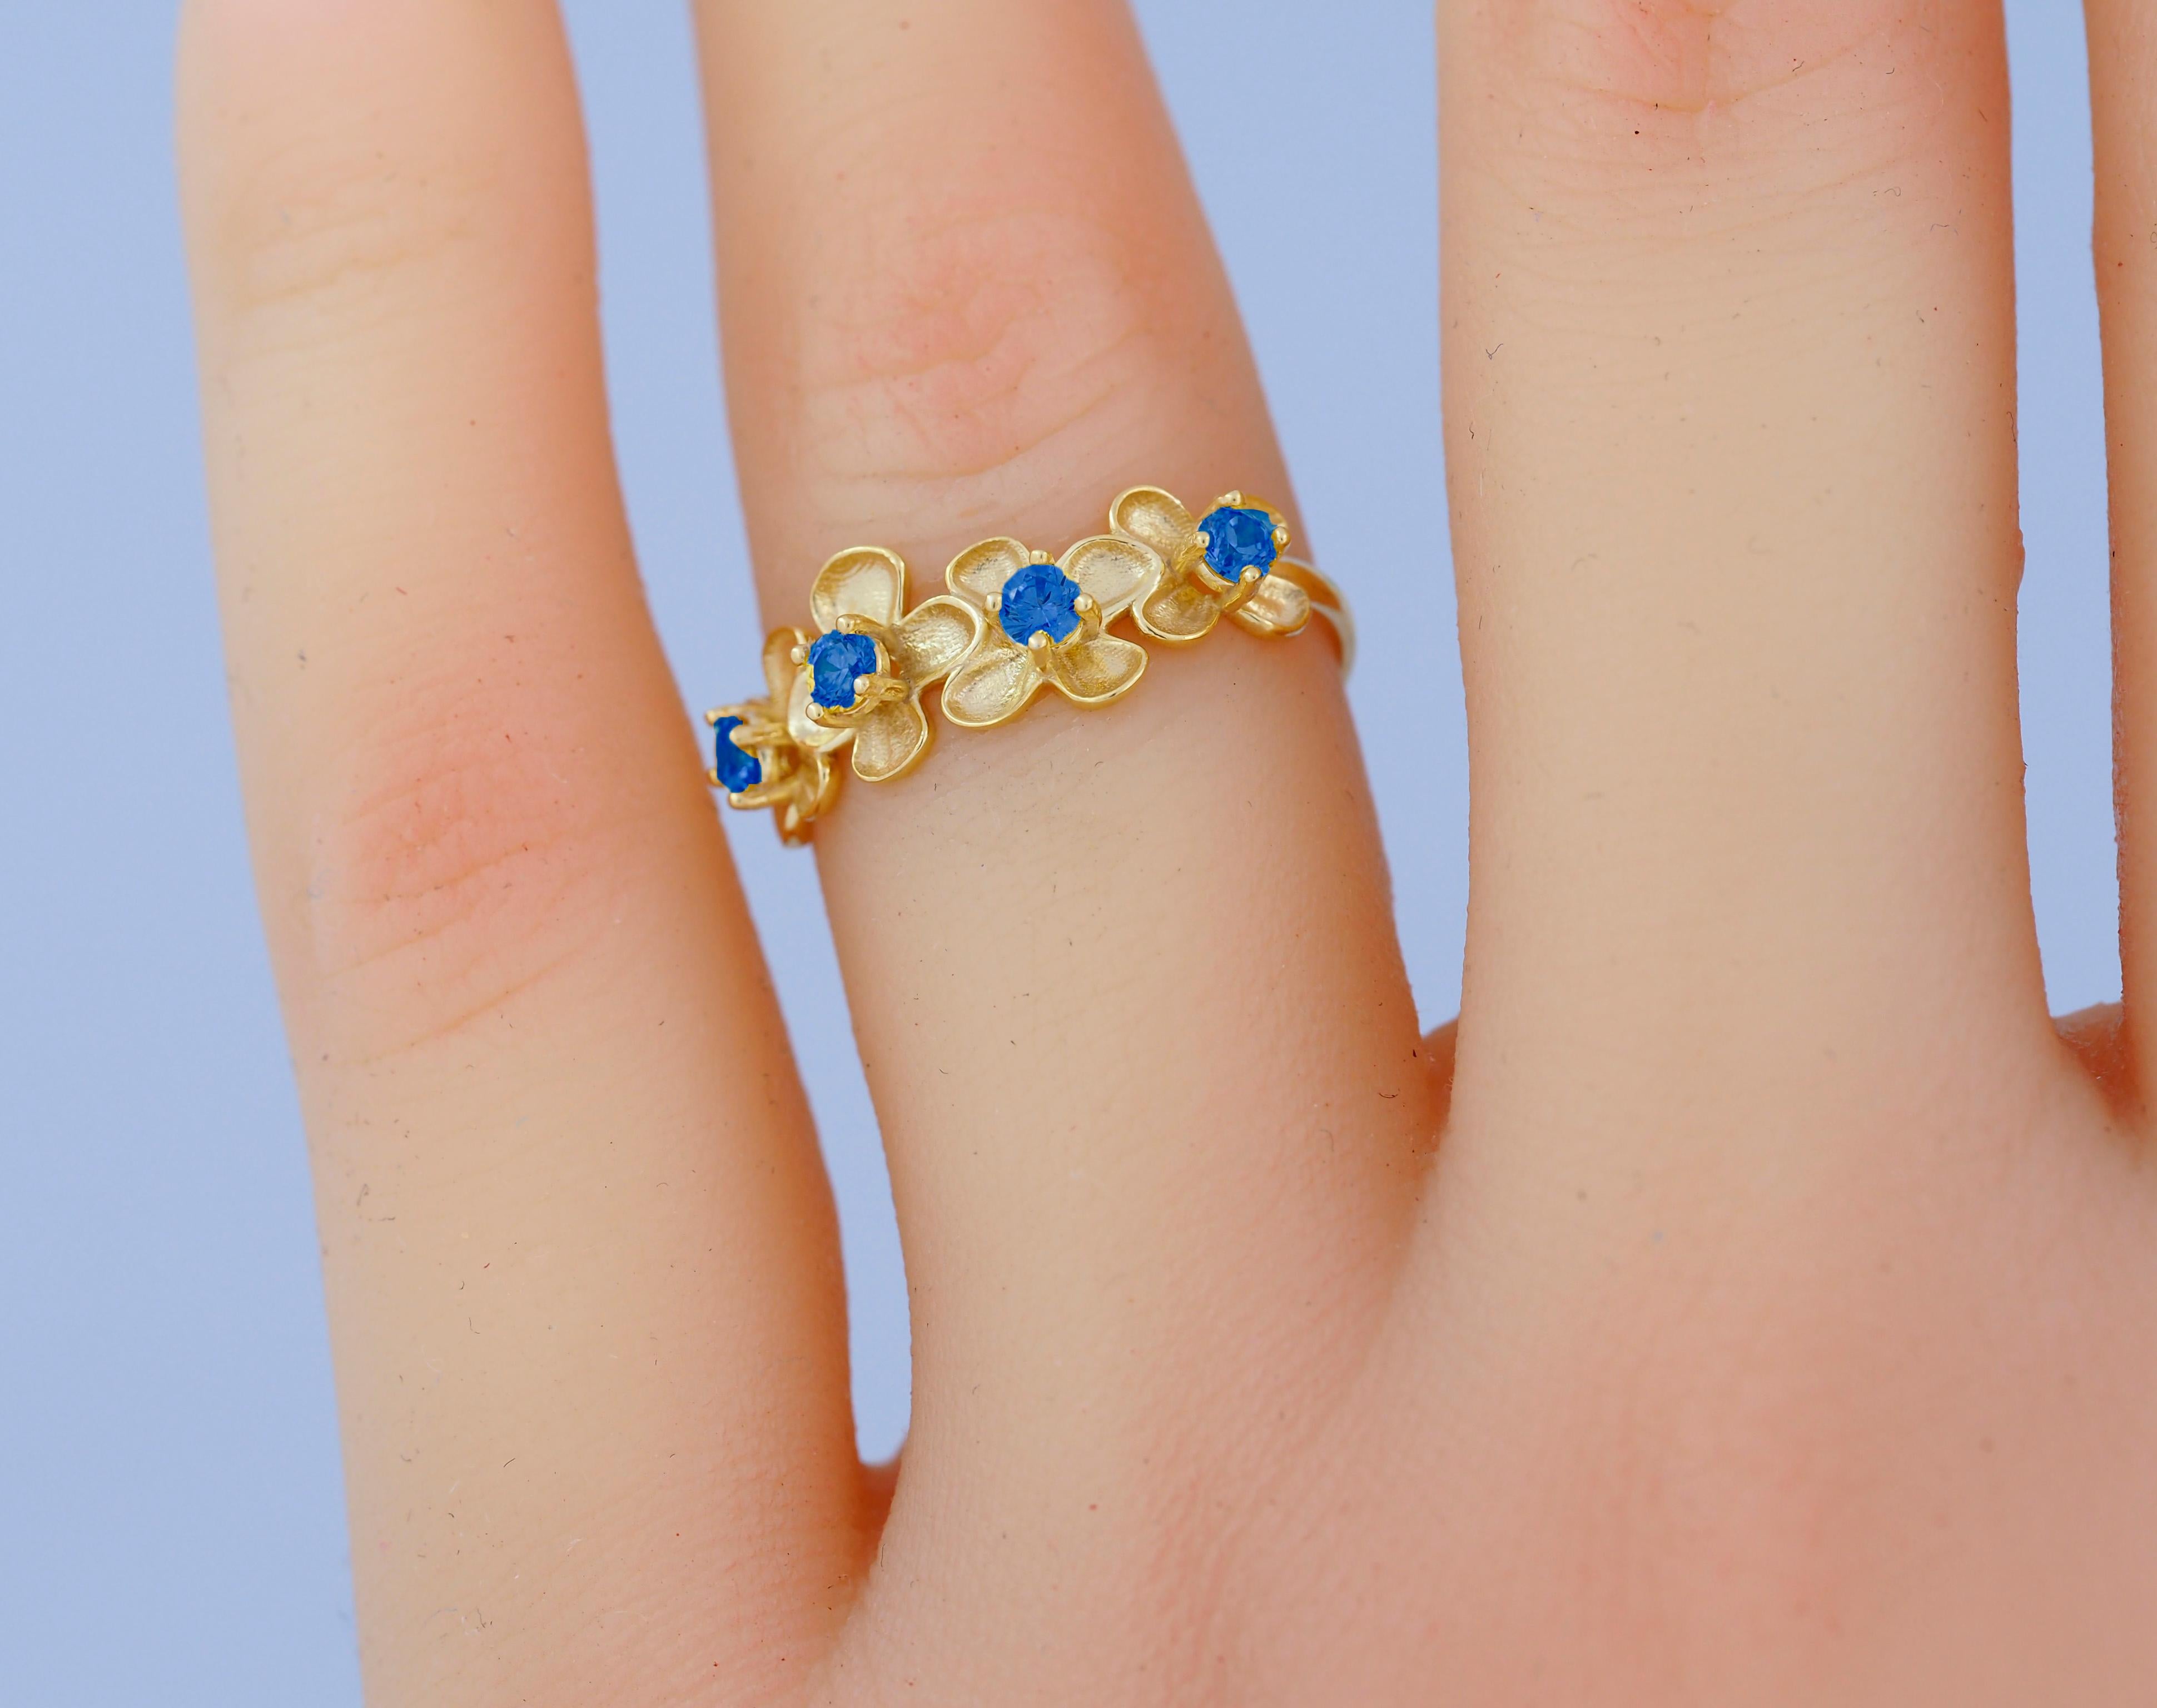 For Sale:  Flower 14k gold ring. 2